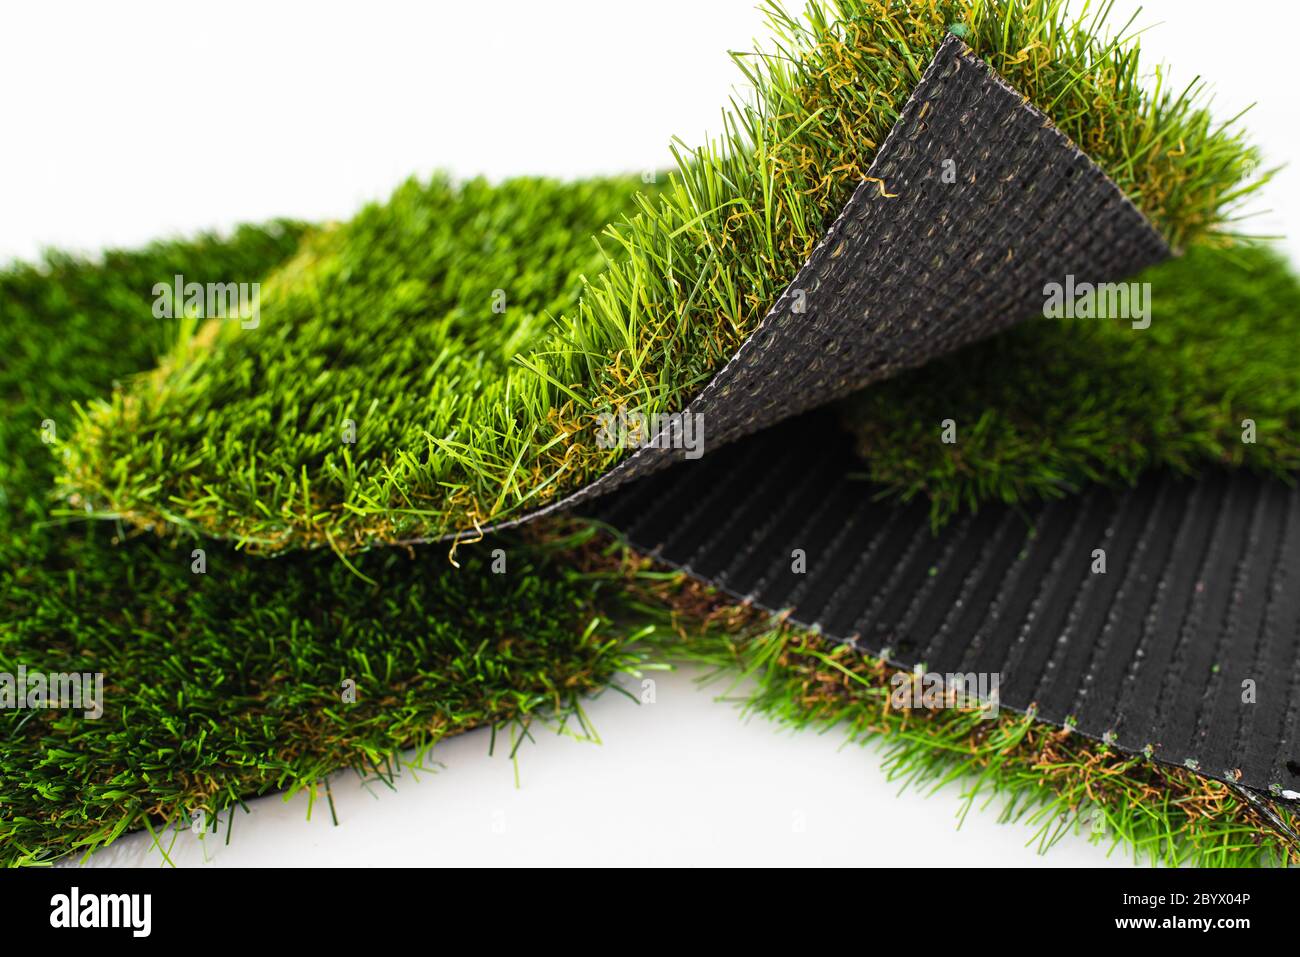 Probe Stücke von grünen Kunstrasen unterschiedlicher Dicke Stockfotografie  - Alamy